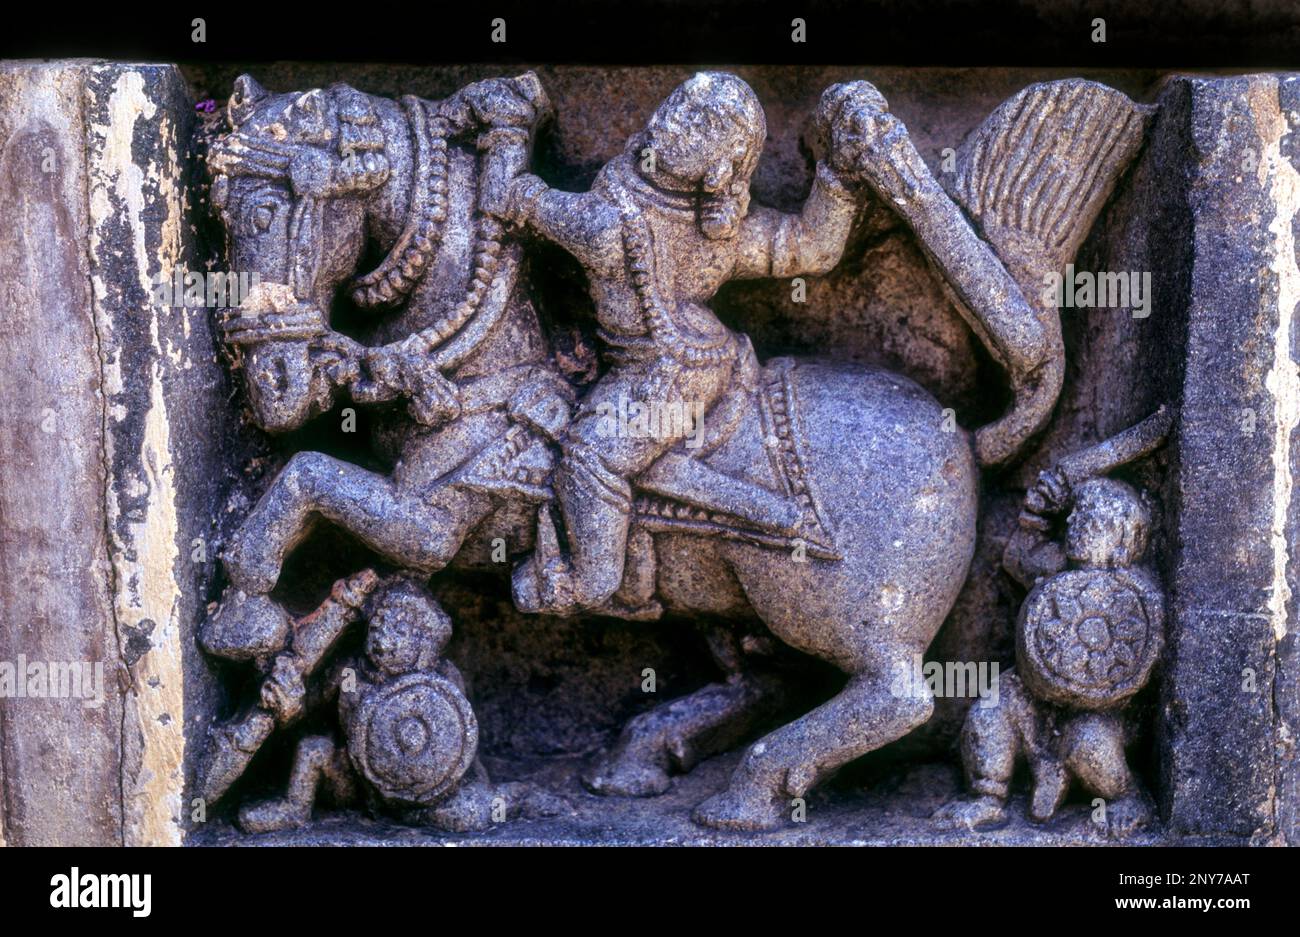 Des hommes qui ont des chevaux admirablement décorés dans le temple de Chennakeshava à Somnathpur, Karnataka 1268 A. D. Inde du Sud, Inde, Asie Banque D'Images